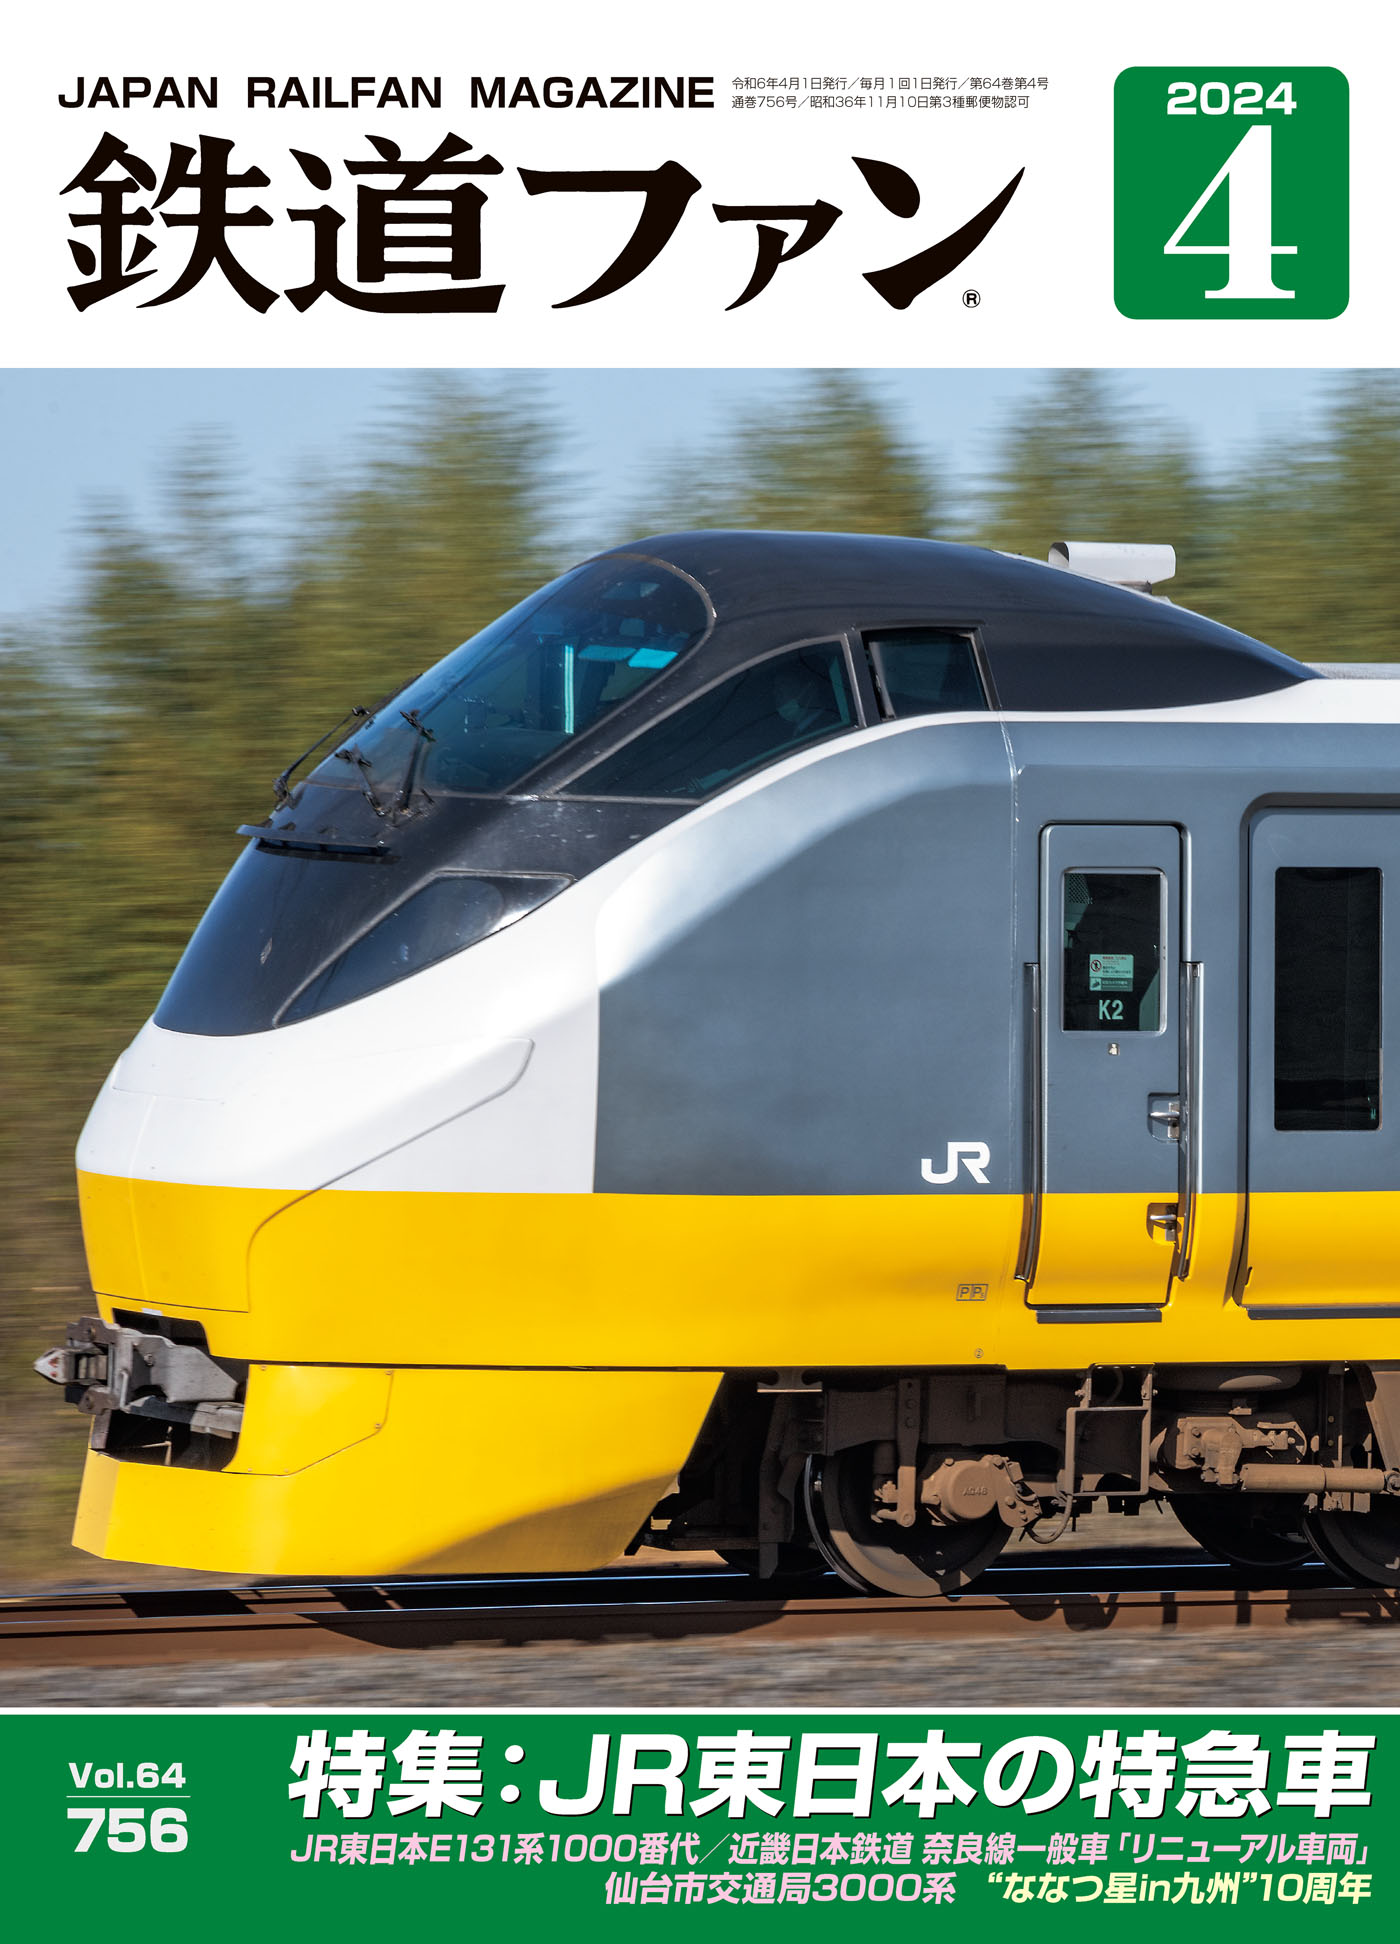 北陸新幹線 試乗会 乗車証 - コレクション